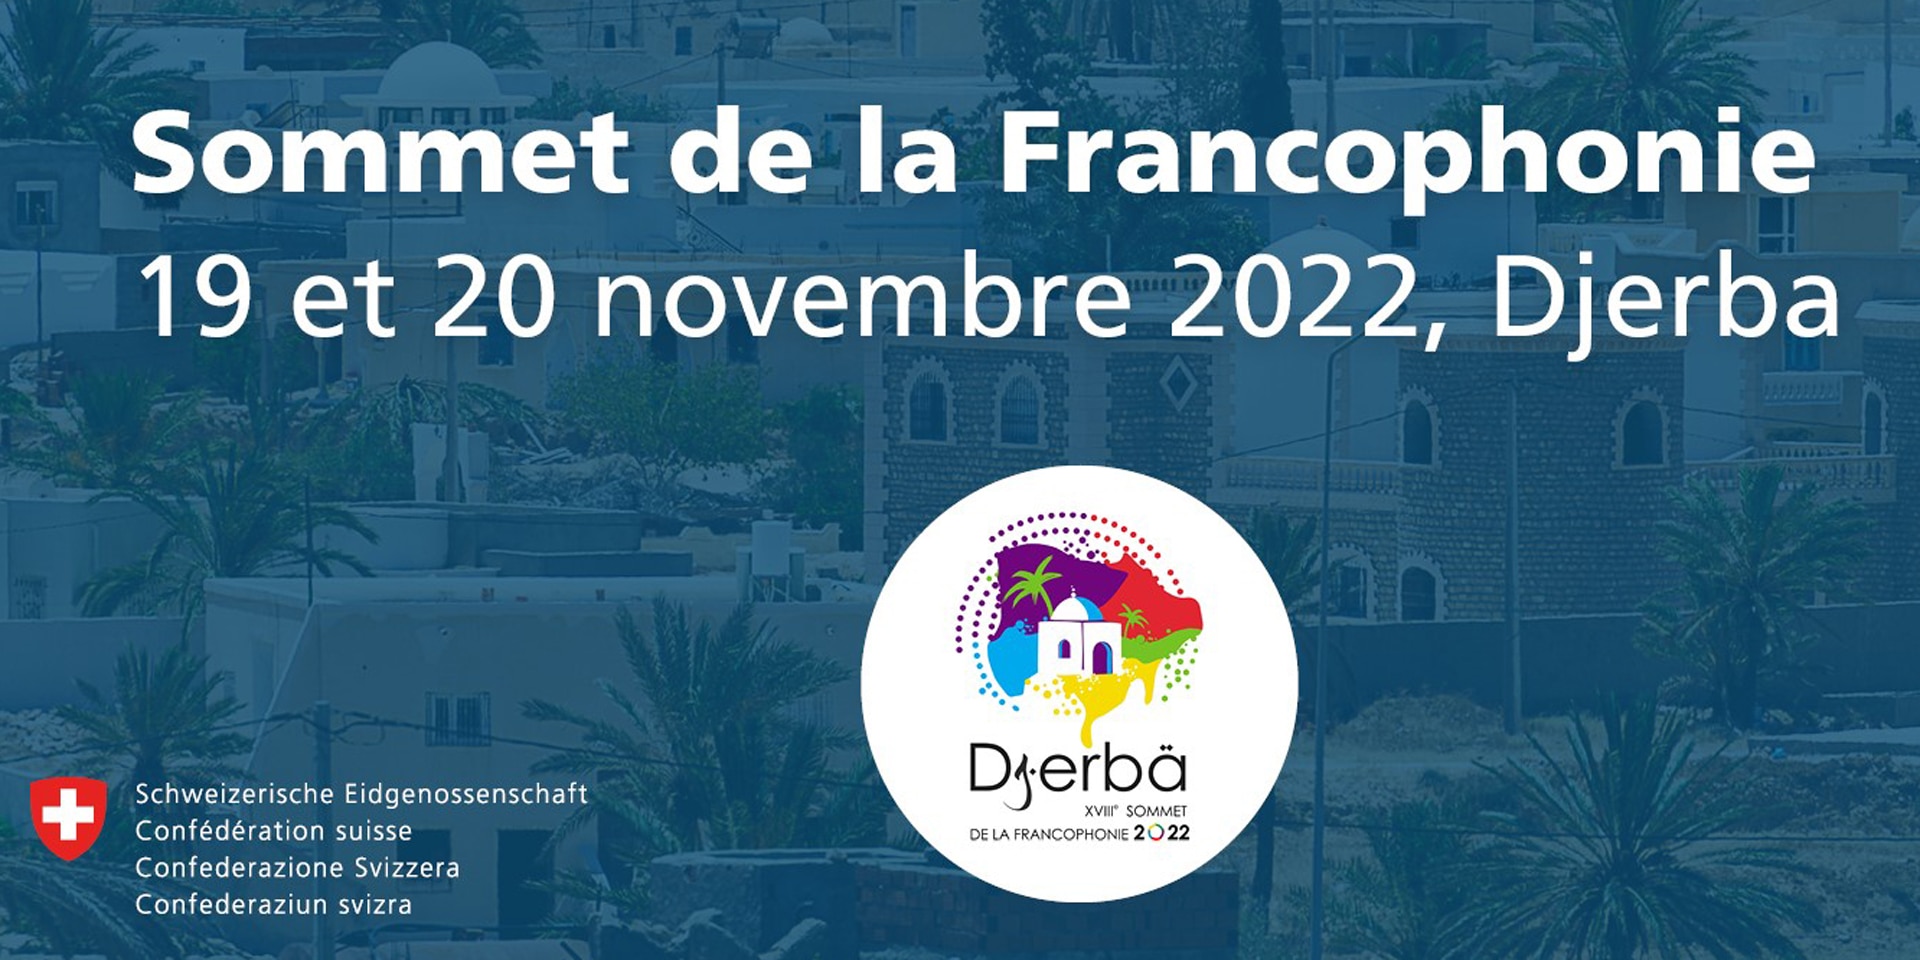 Affiche annonçant le Sommet de la Francophonie qui se tient cette année à Djerba.